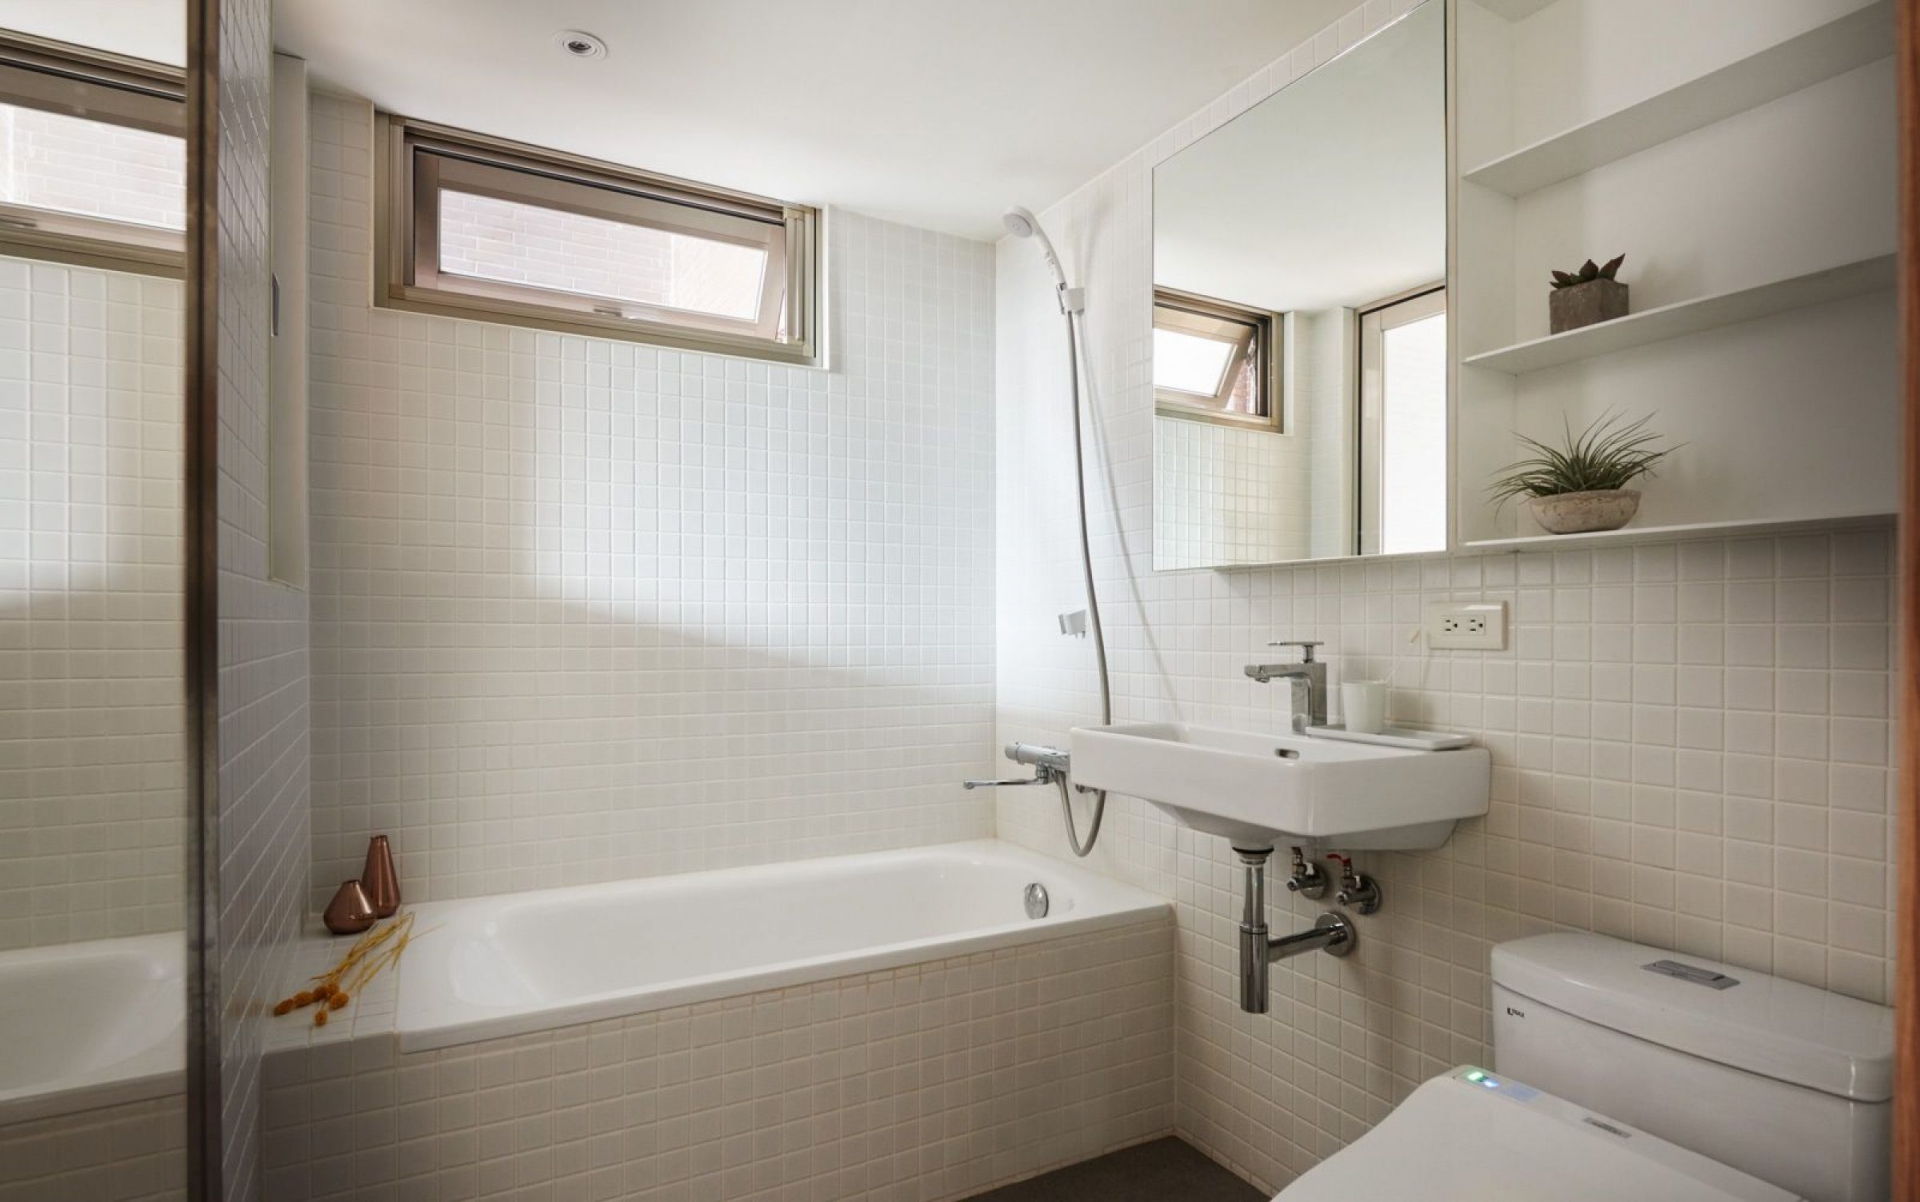 Nội thất phòng tắm vẫn “trung thành” với gam màu trắng nhưng có thêm cây xanh trang trí. Buồng tắm đứng trước khi cải tạo được thay thế bằng bồn tắm nằm. Tấm gương phản chiếu ánh sáng từ ô cửa giúp phòng tắm rộng và thoáng đãng hơn.